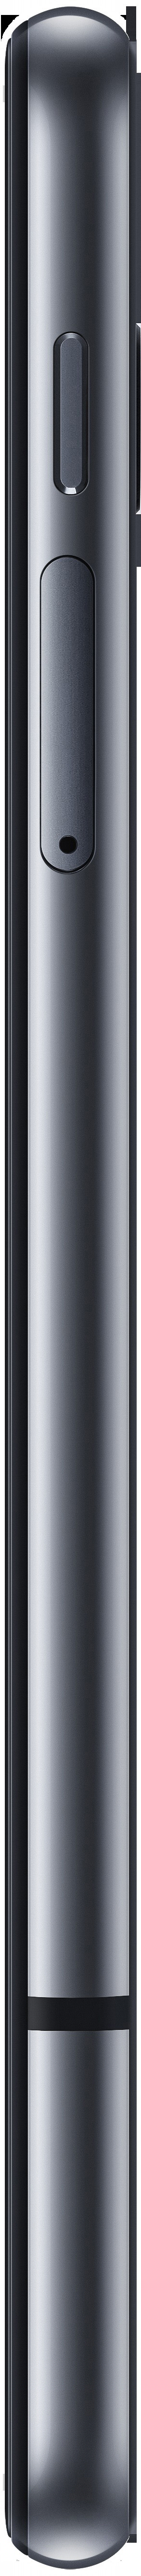 LG G8S ThinQ Mirror GB Black 128 Dual SIM